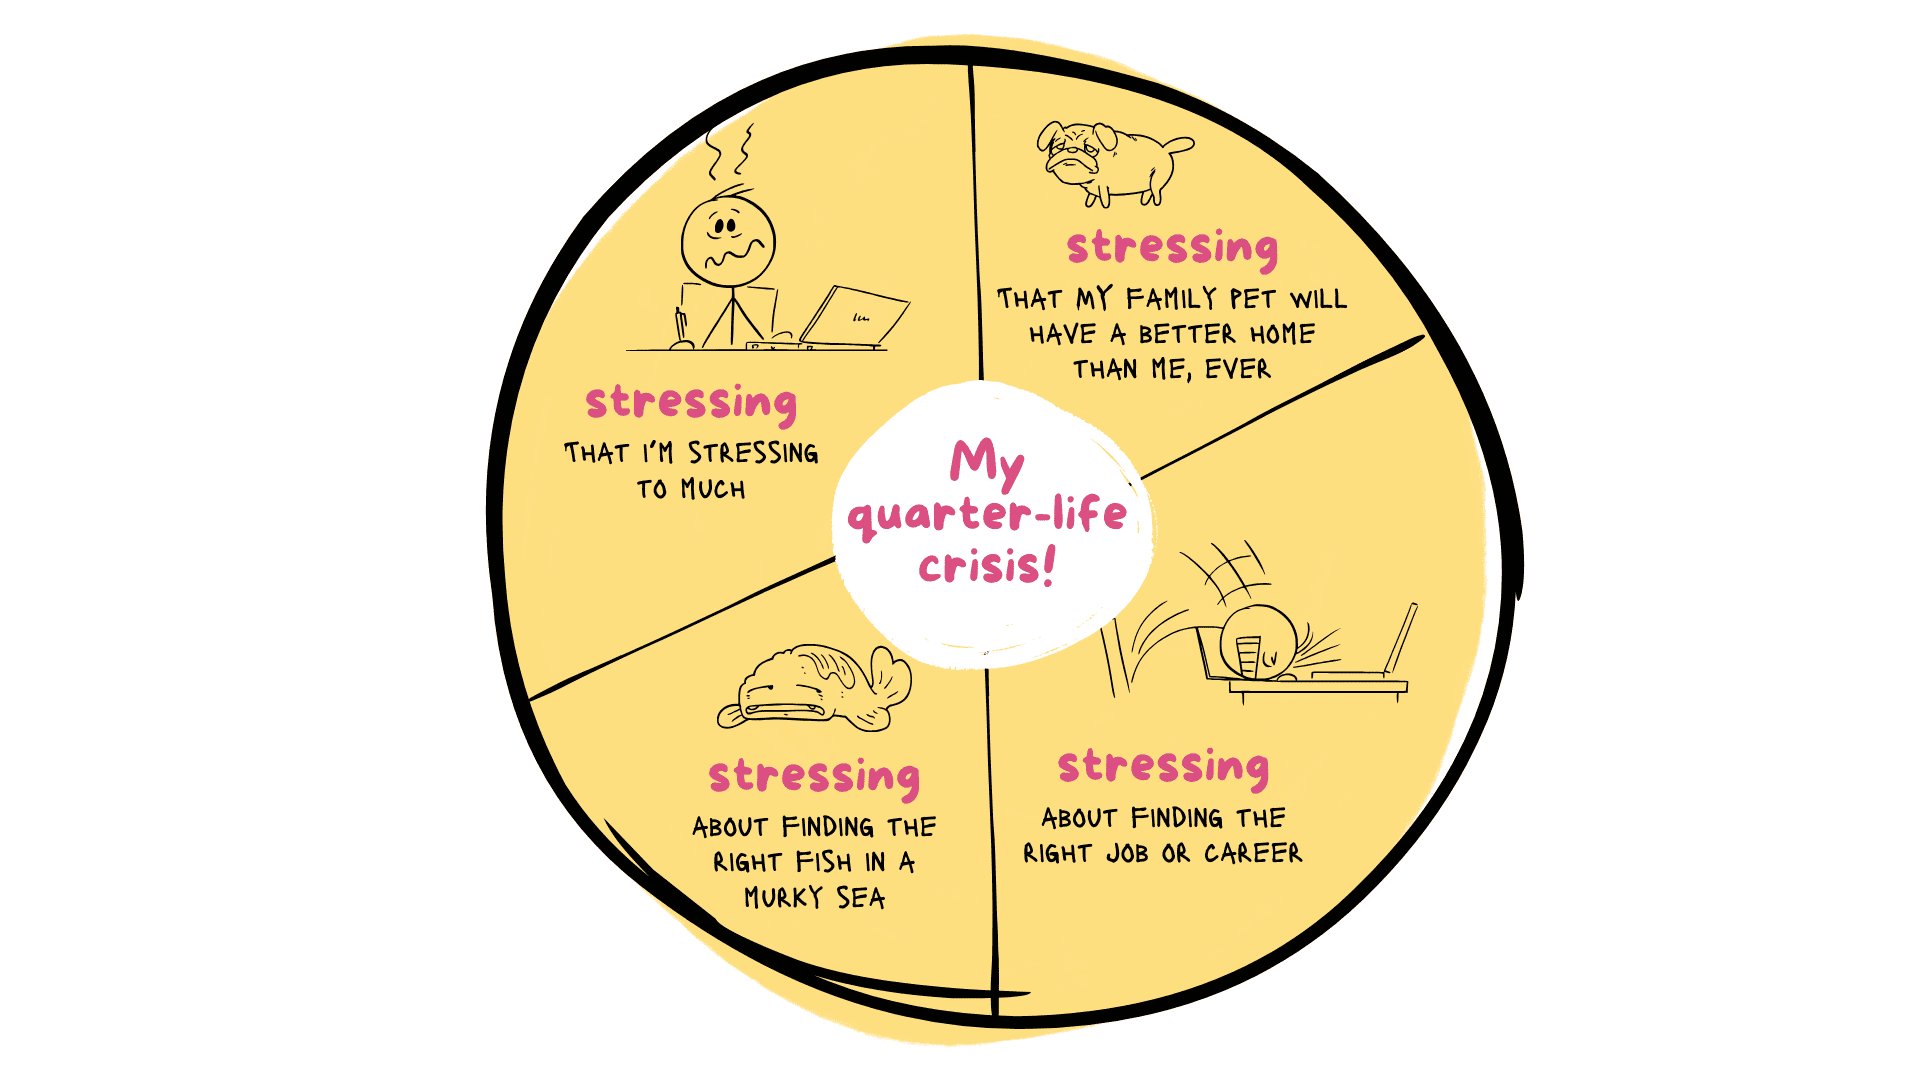 Quarter-life crisis